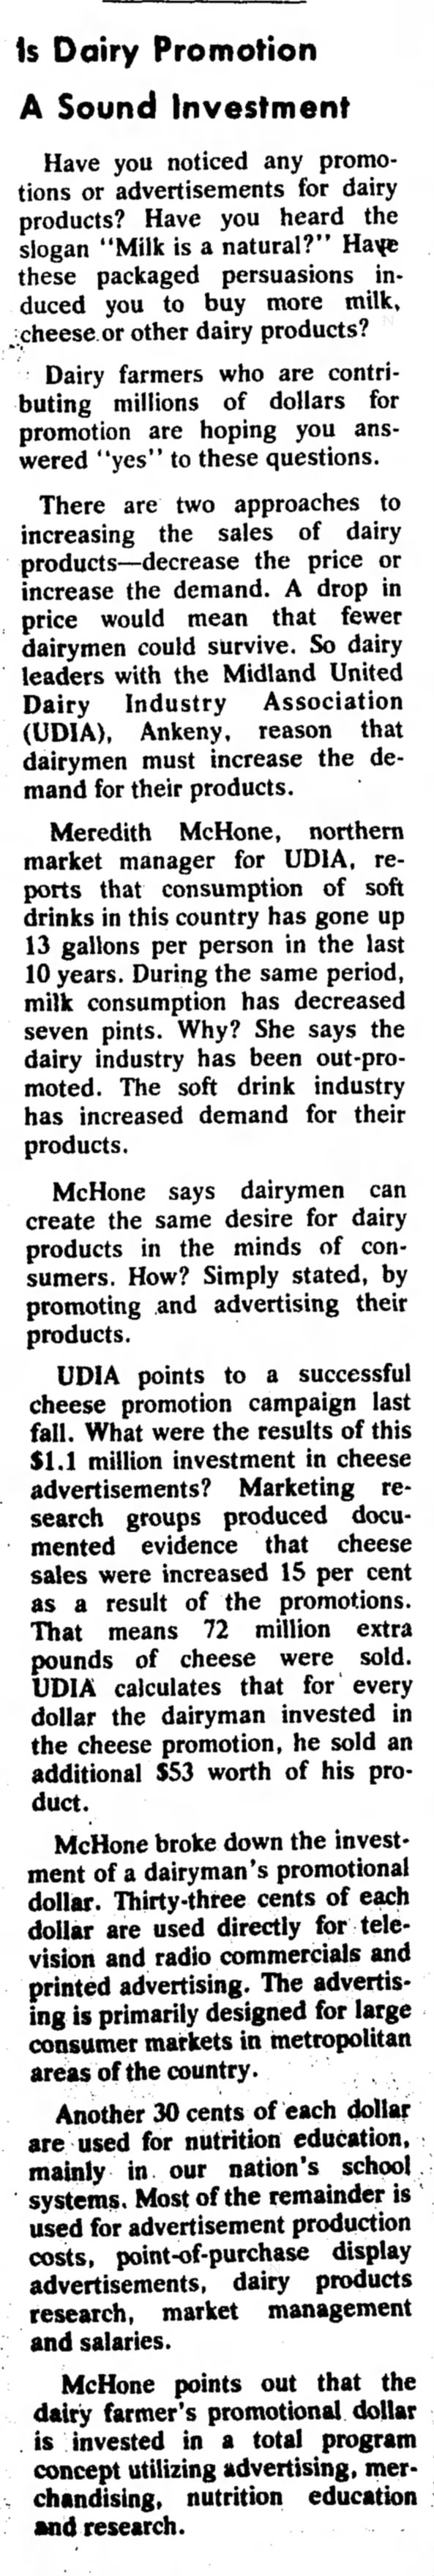 Postville Herald Postville, Iowa
Wednesday, July 30, 1975 